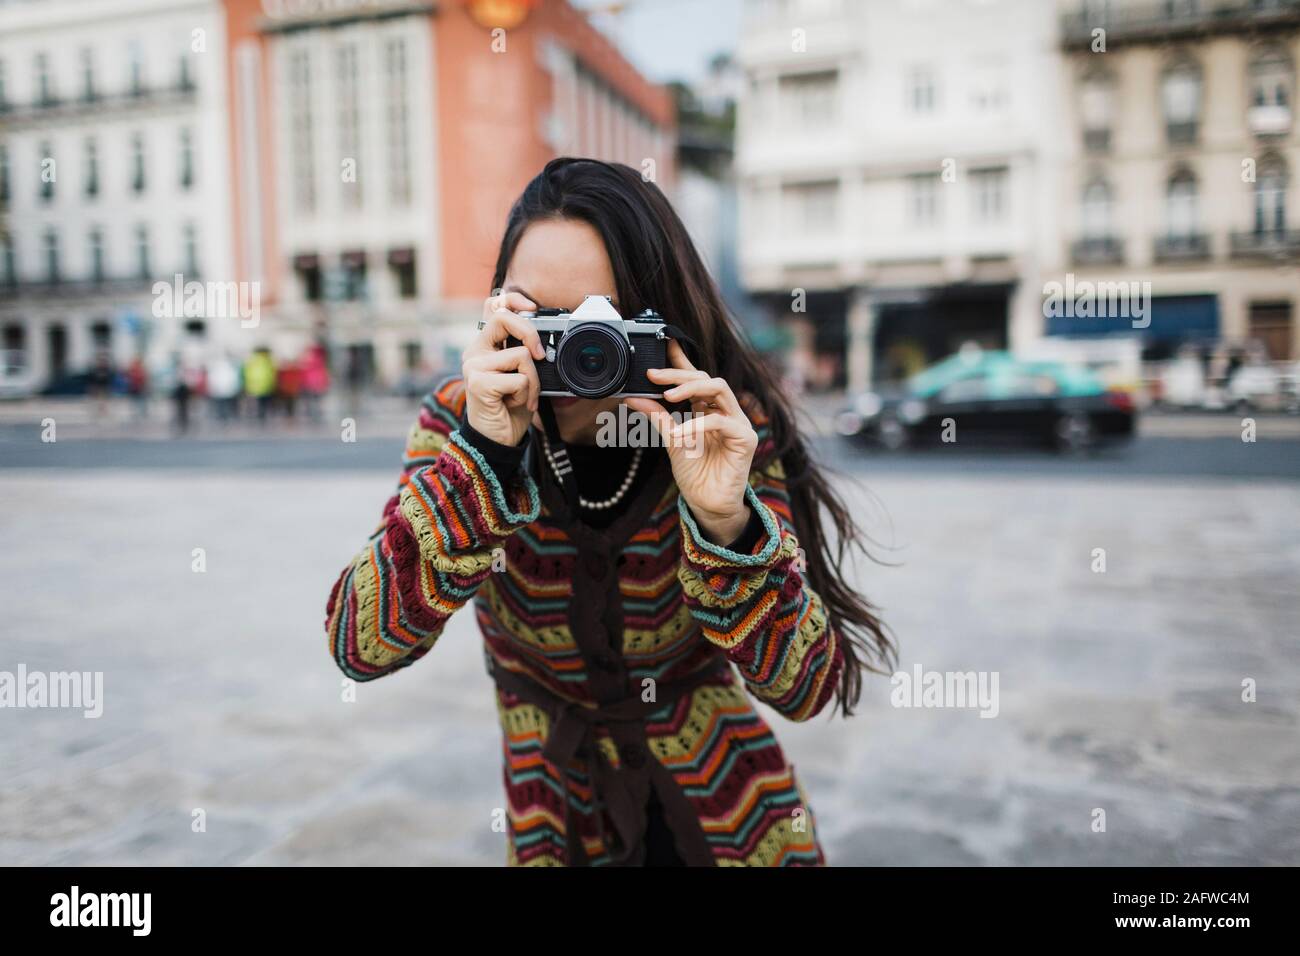 Ritratto turista femminile utilizzando la fotocamera su una strada di città Foto Stock